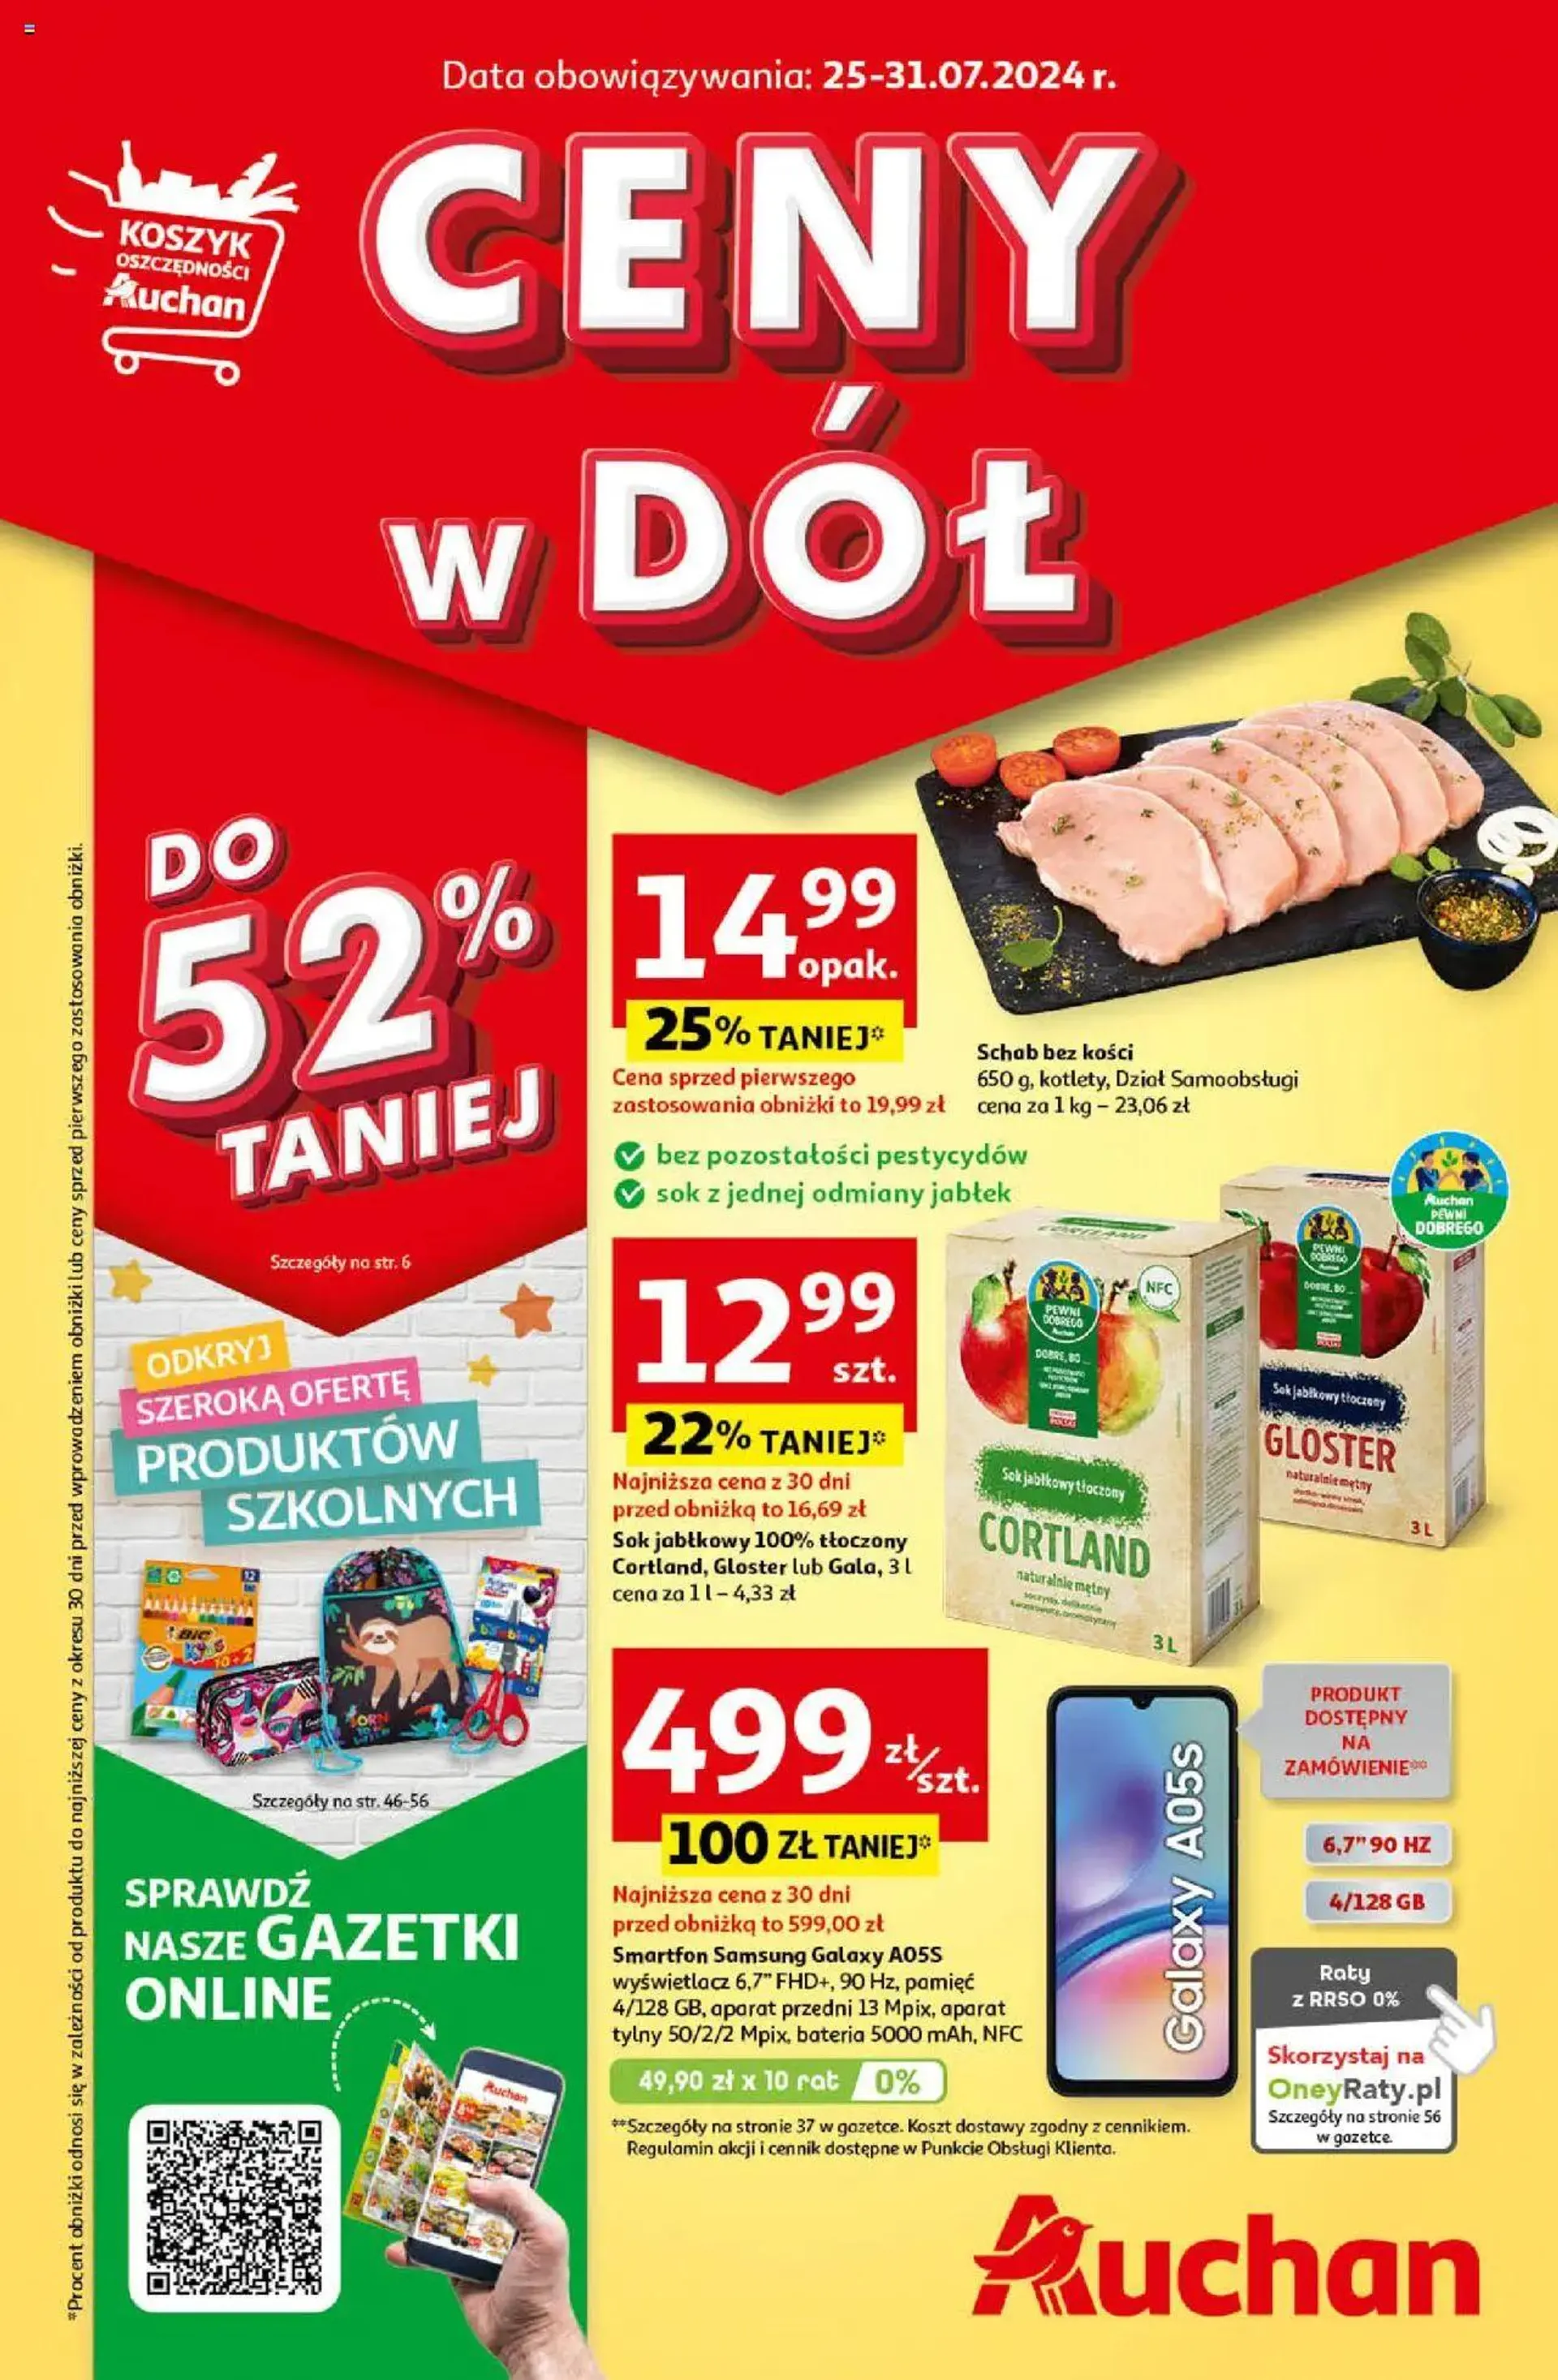 Auchan Gazetka - Ceny w dół Hipermarket - 0